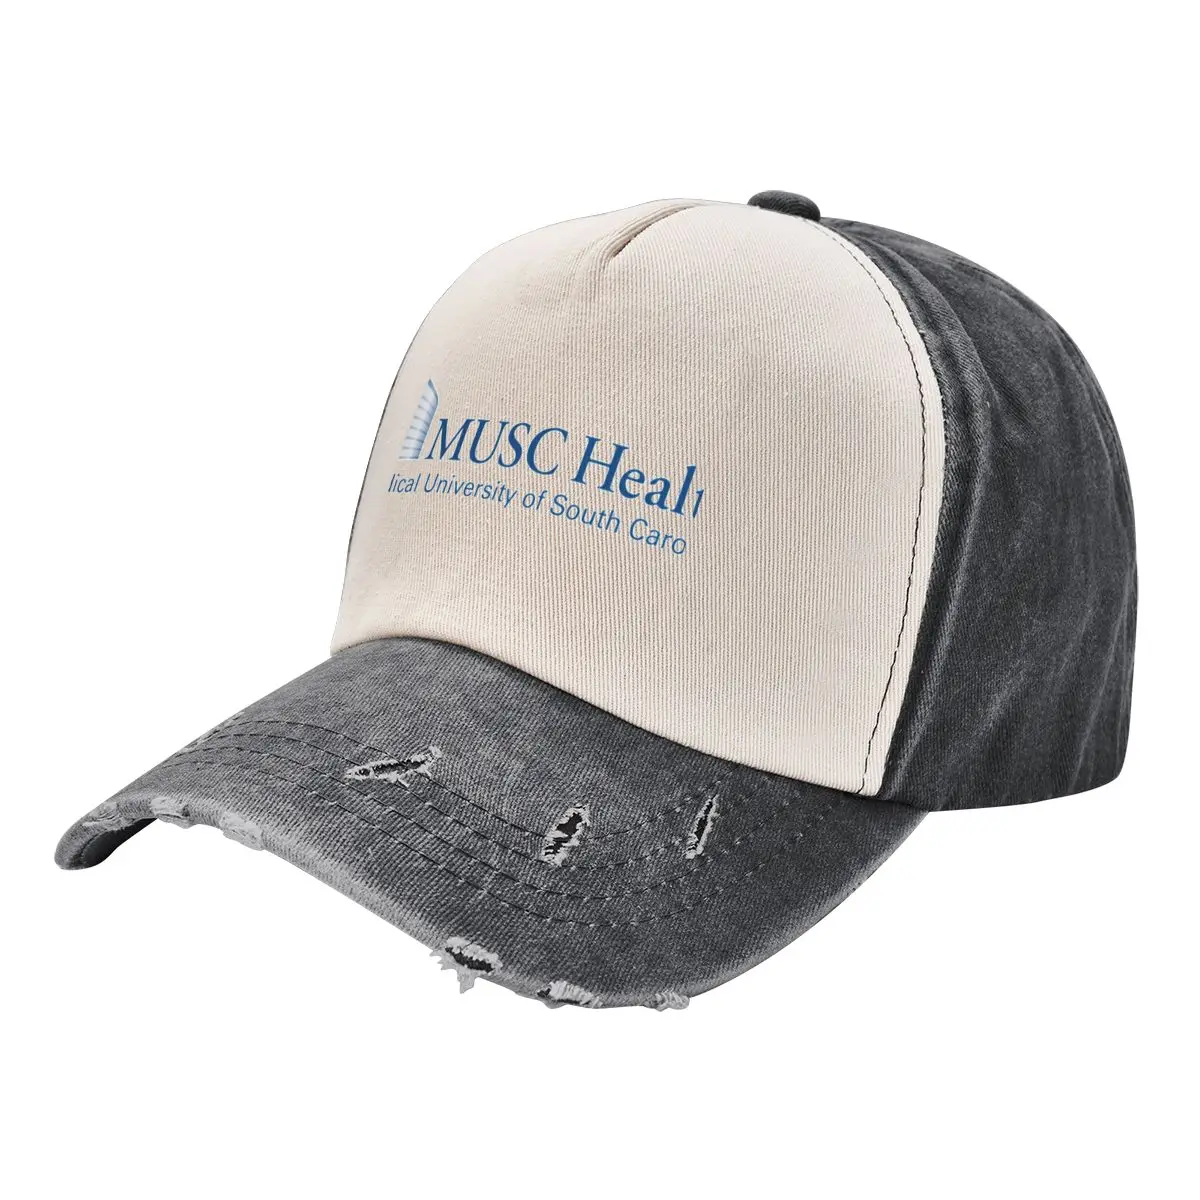 

MUSC Tshirt Cowboy Hat Trucker Cap New Hat Gentleman Hat Hat For Men Women's